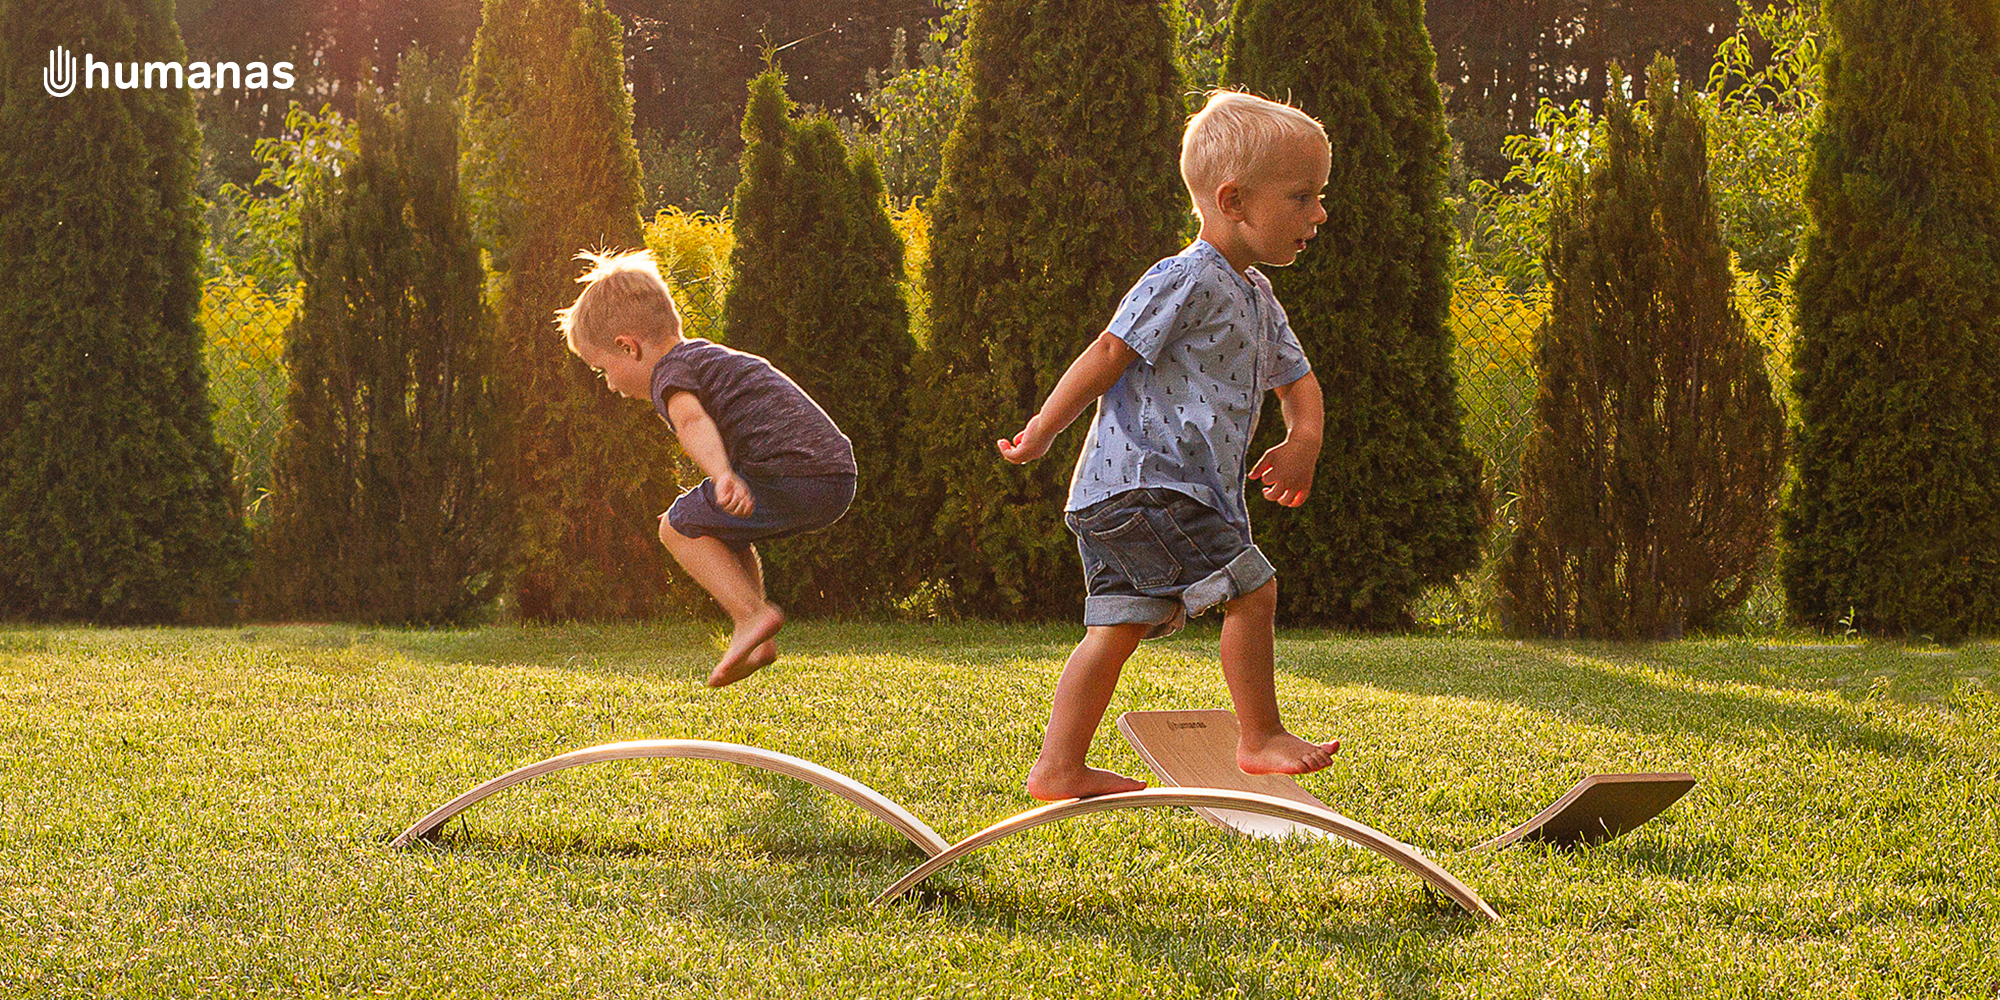 Dwóch małych chłopców bawi się deską do balansowania Humanas BoardOne w ogrodzie